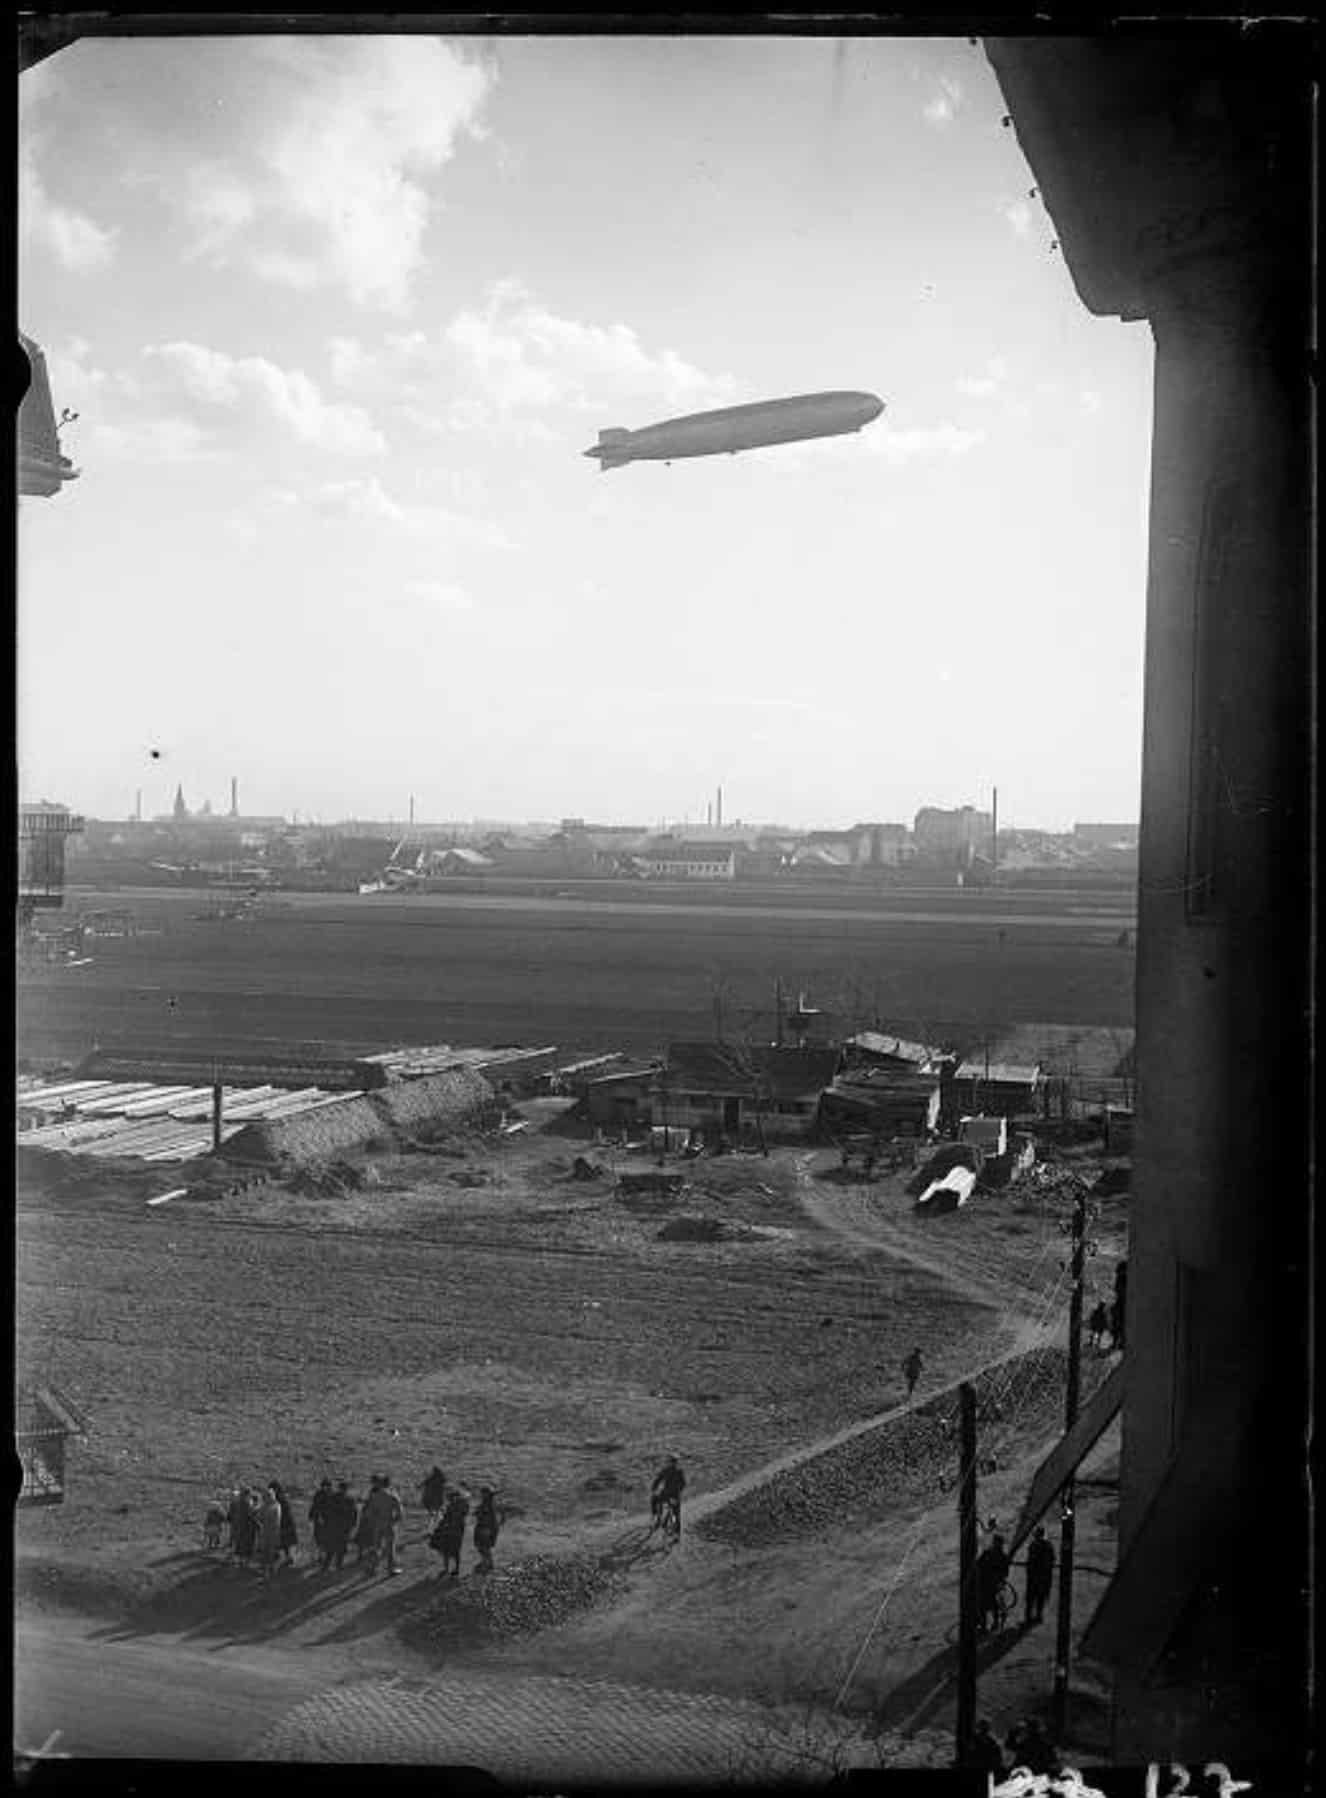 11b. Imre Kinszki, <i>Zeppelin léghajó Zugló felett</i> (“The Zeppelin airship above Zugló”), 1931 © FSZEK